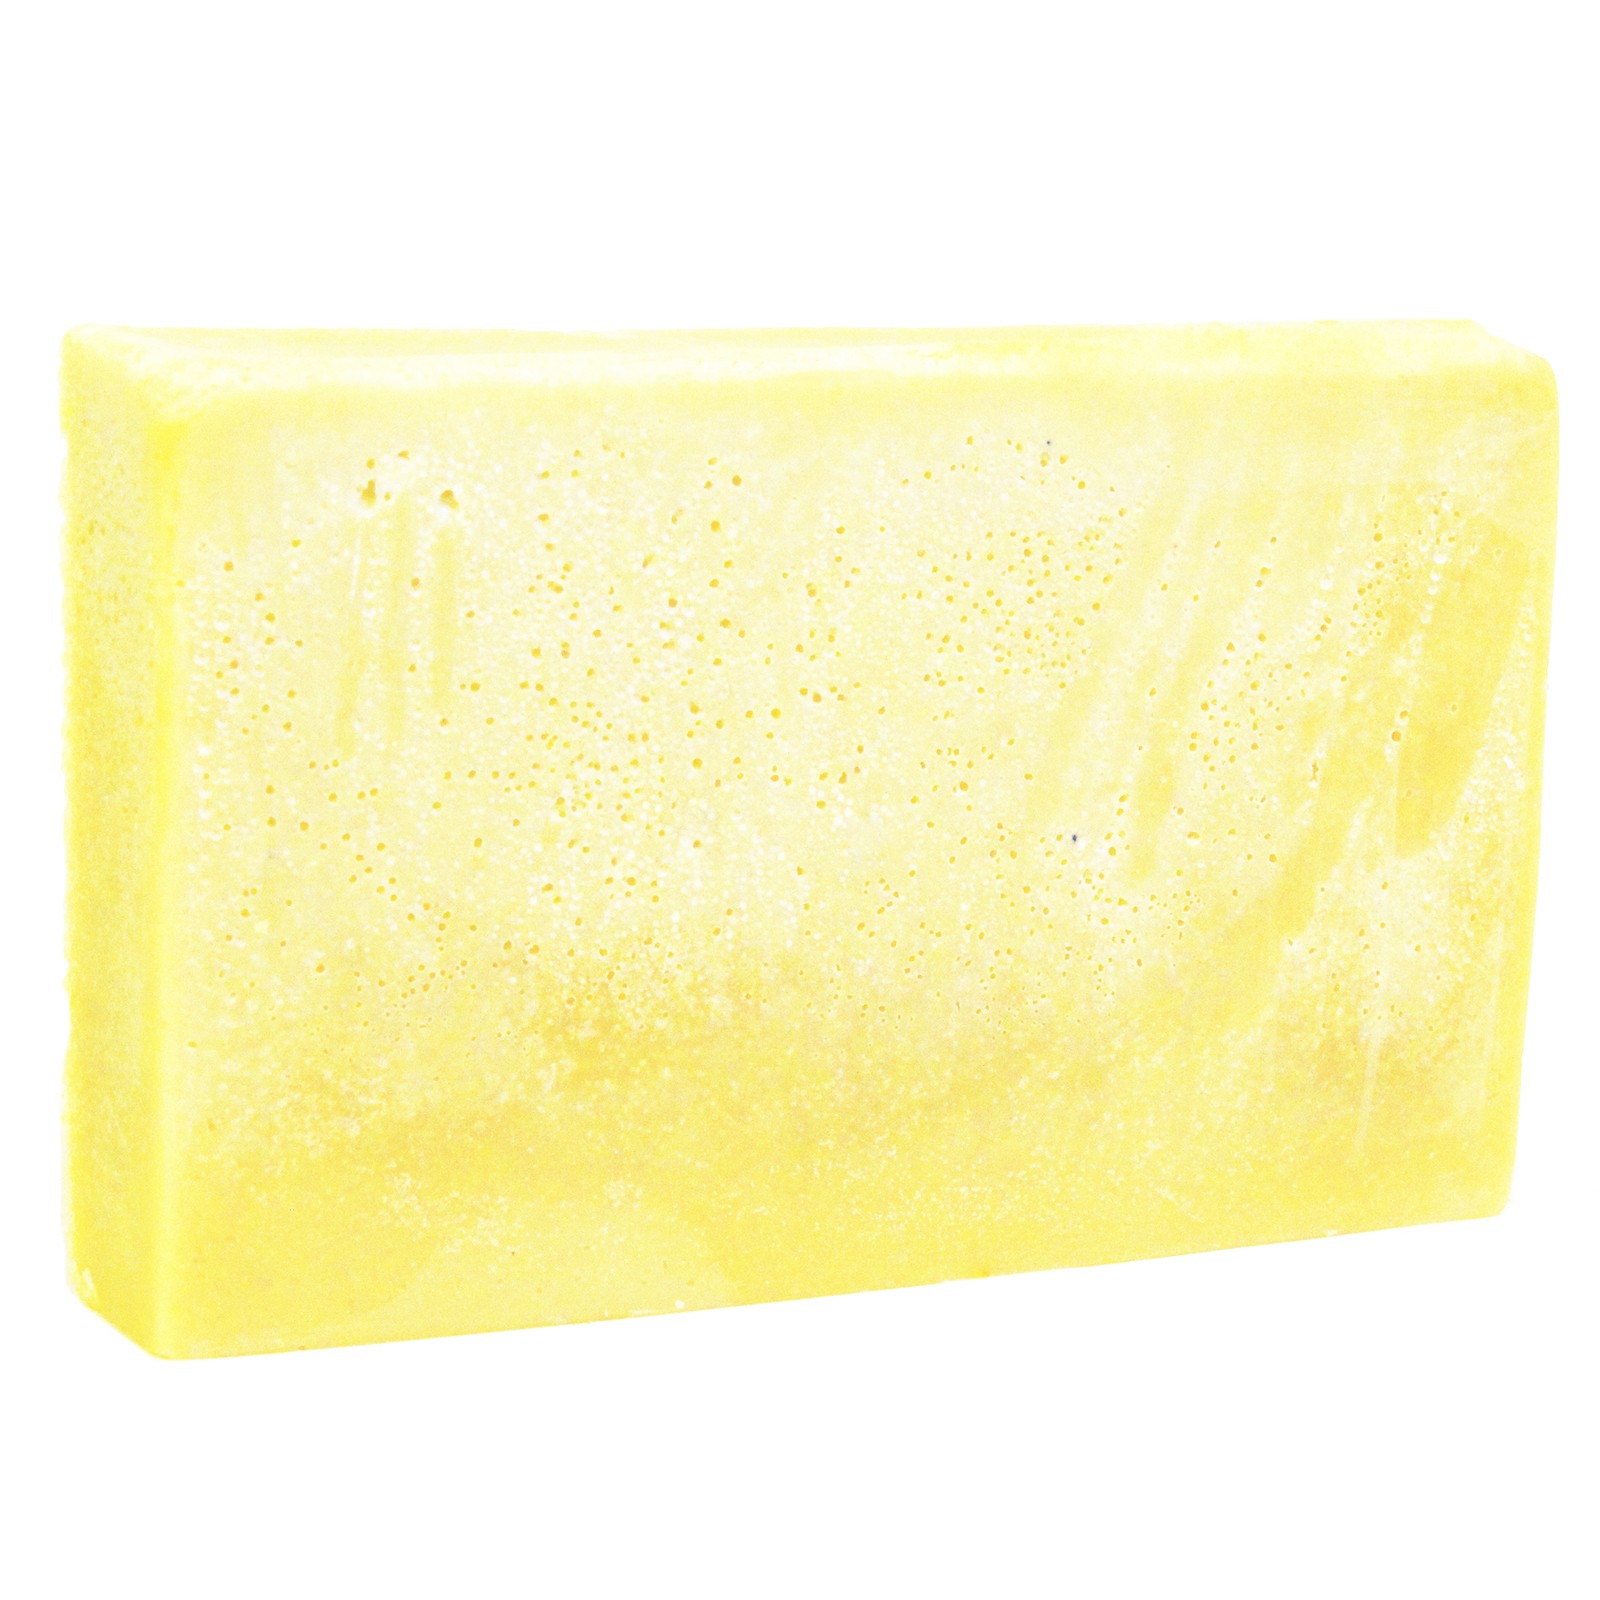 Double Butter Luxury Soap Loaf - Oriental Oils